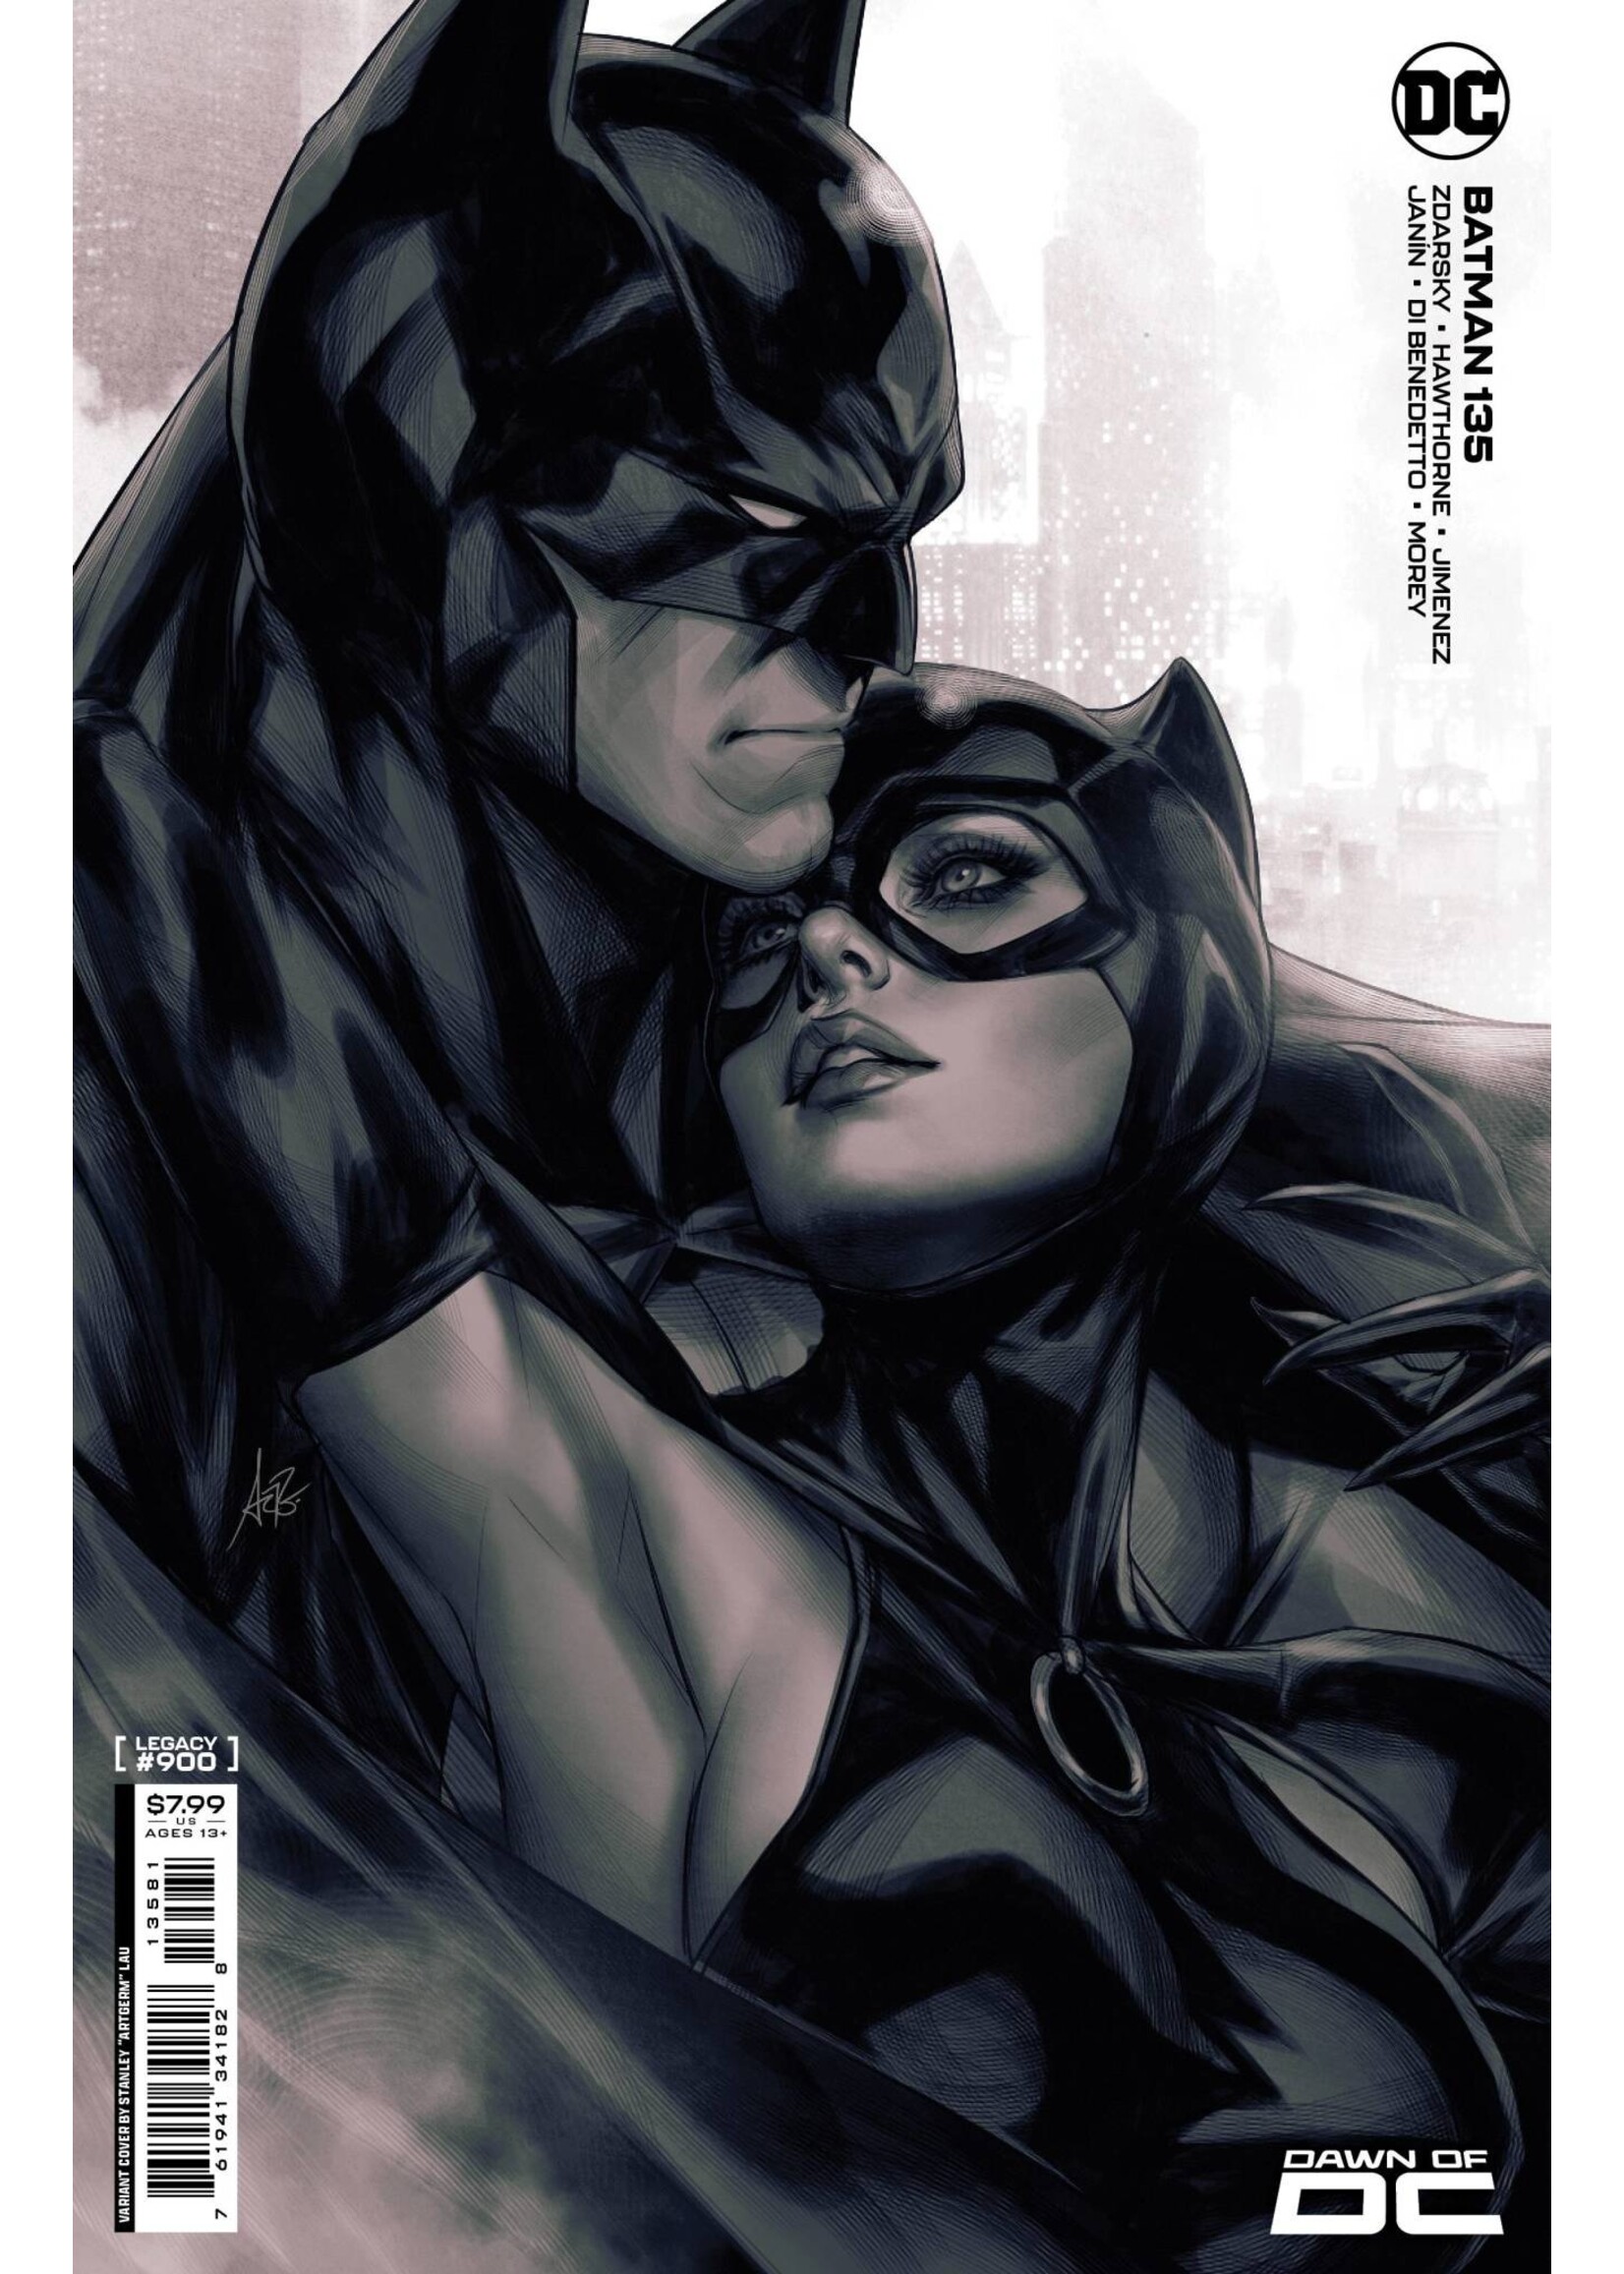 DC COMICS BATMAN #135 ARTGERM CARD